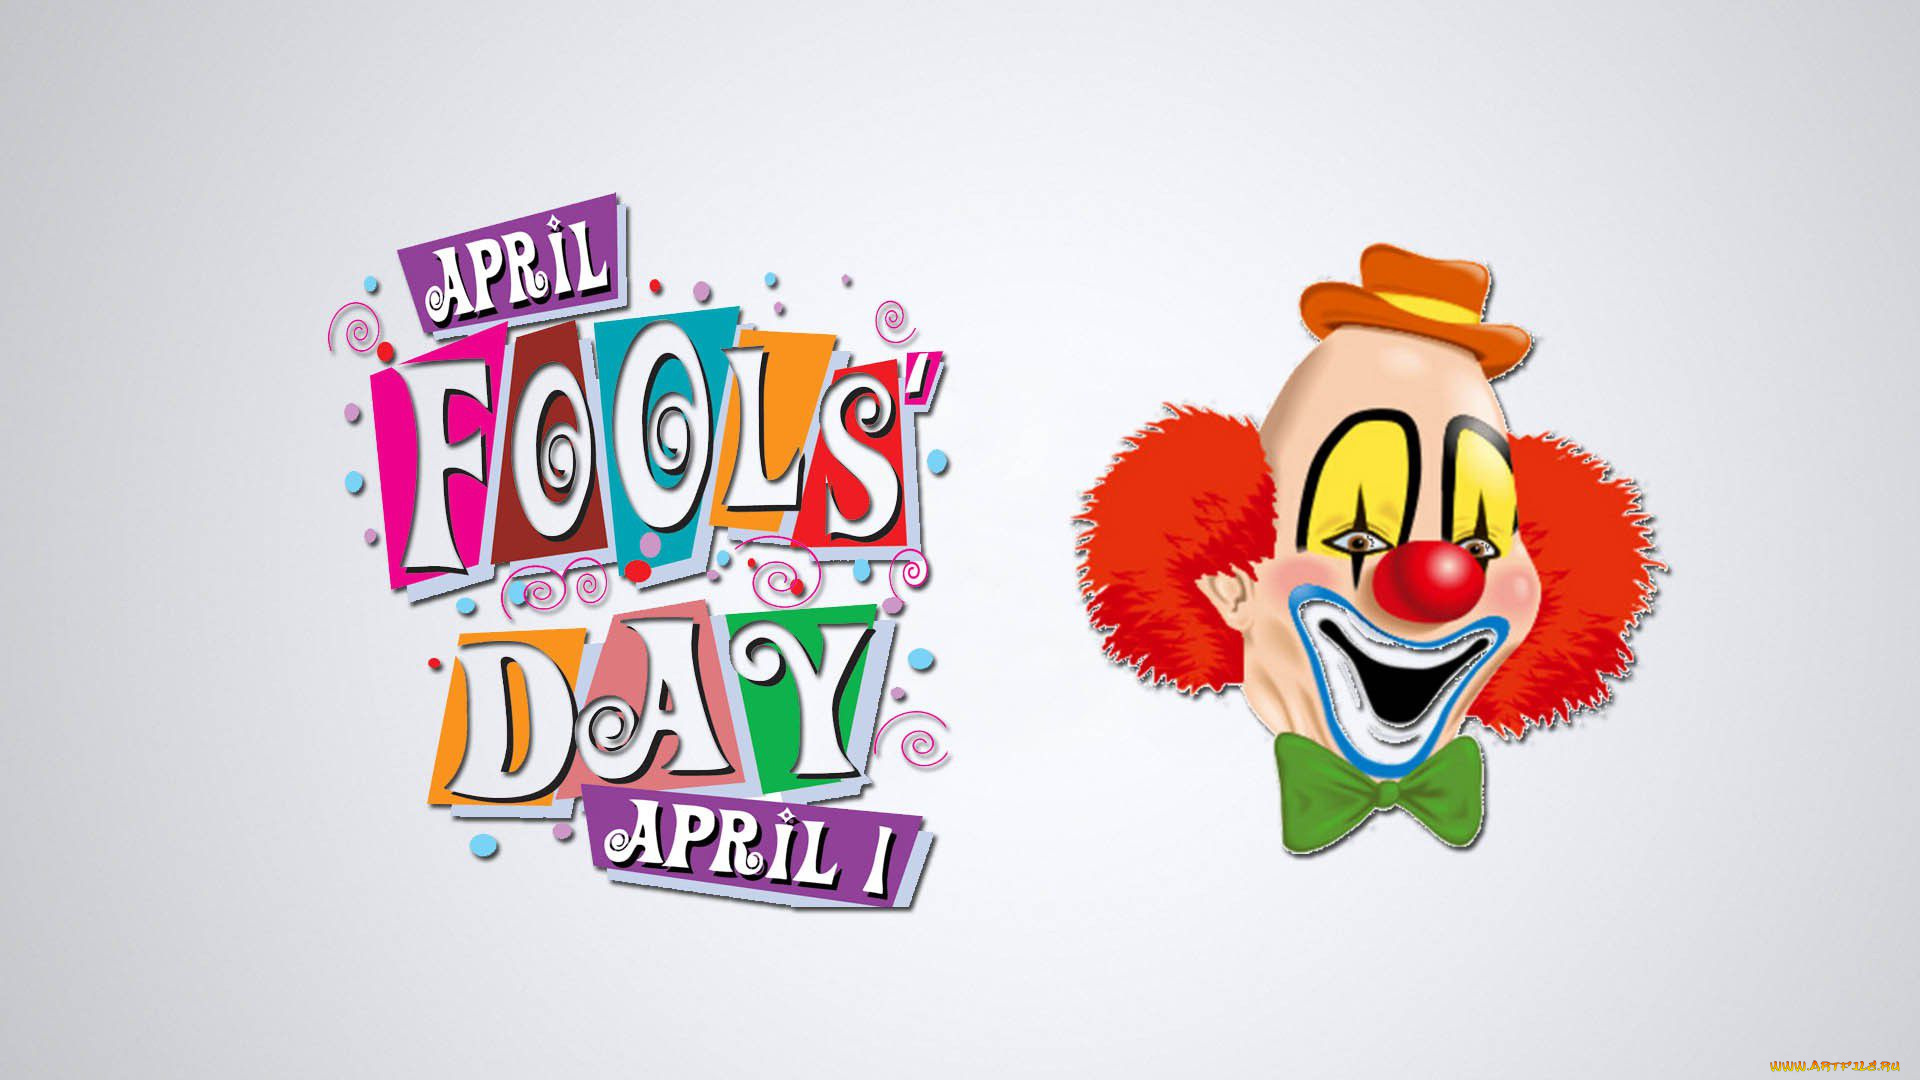 с, 1, апреля, праздничные, другое, 1, апреля, hd, wallpaper, happy, april, fools, day, клоун, день, дурака